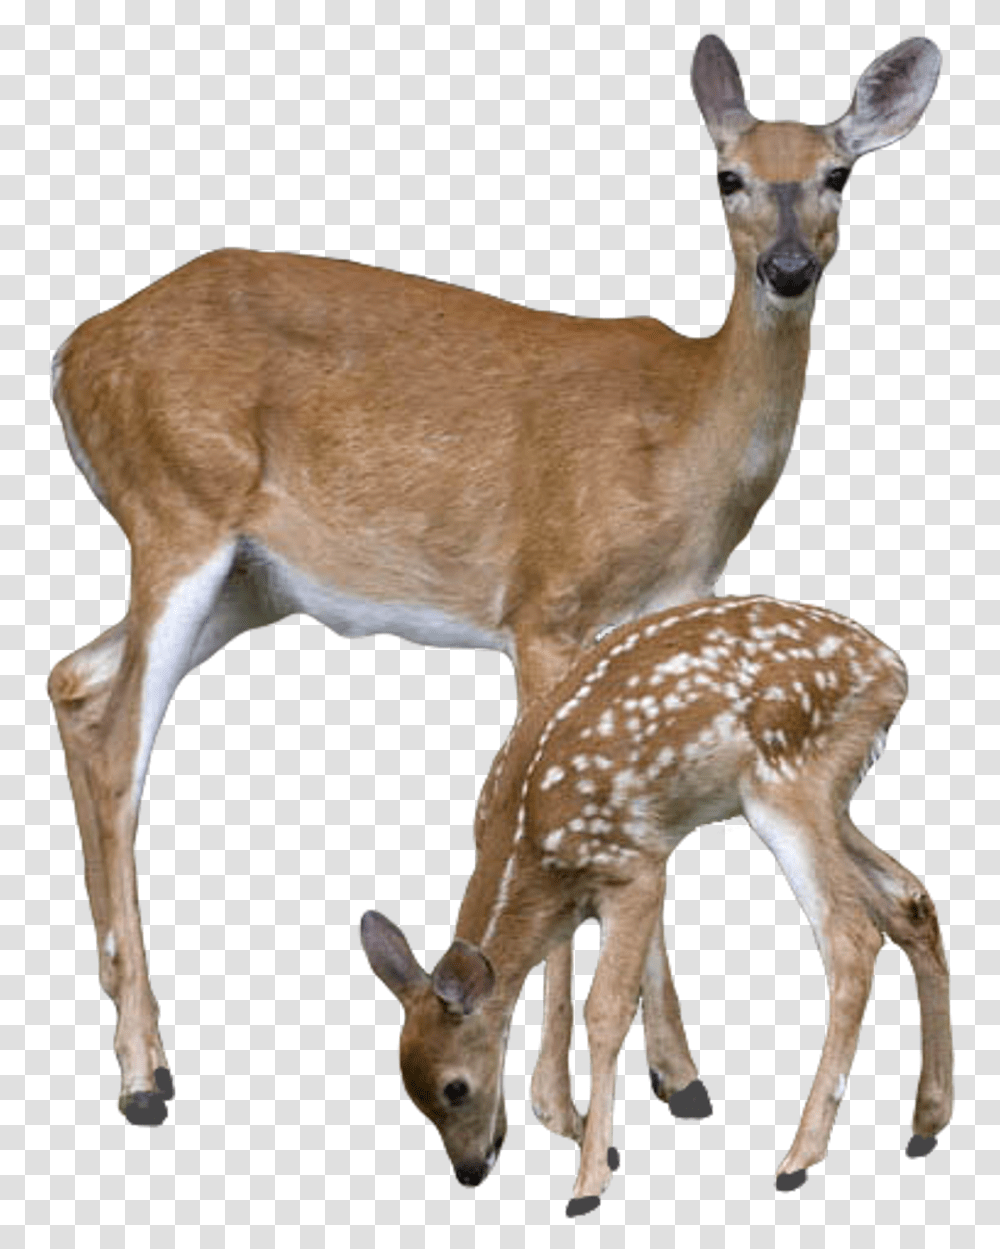 White Deers, Wildlife, Mammal, Animal, Antelope Transparent Png